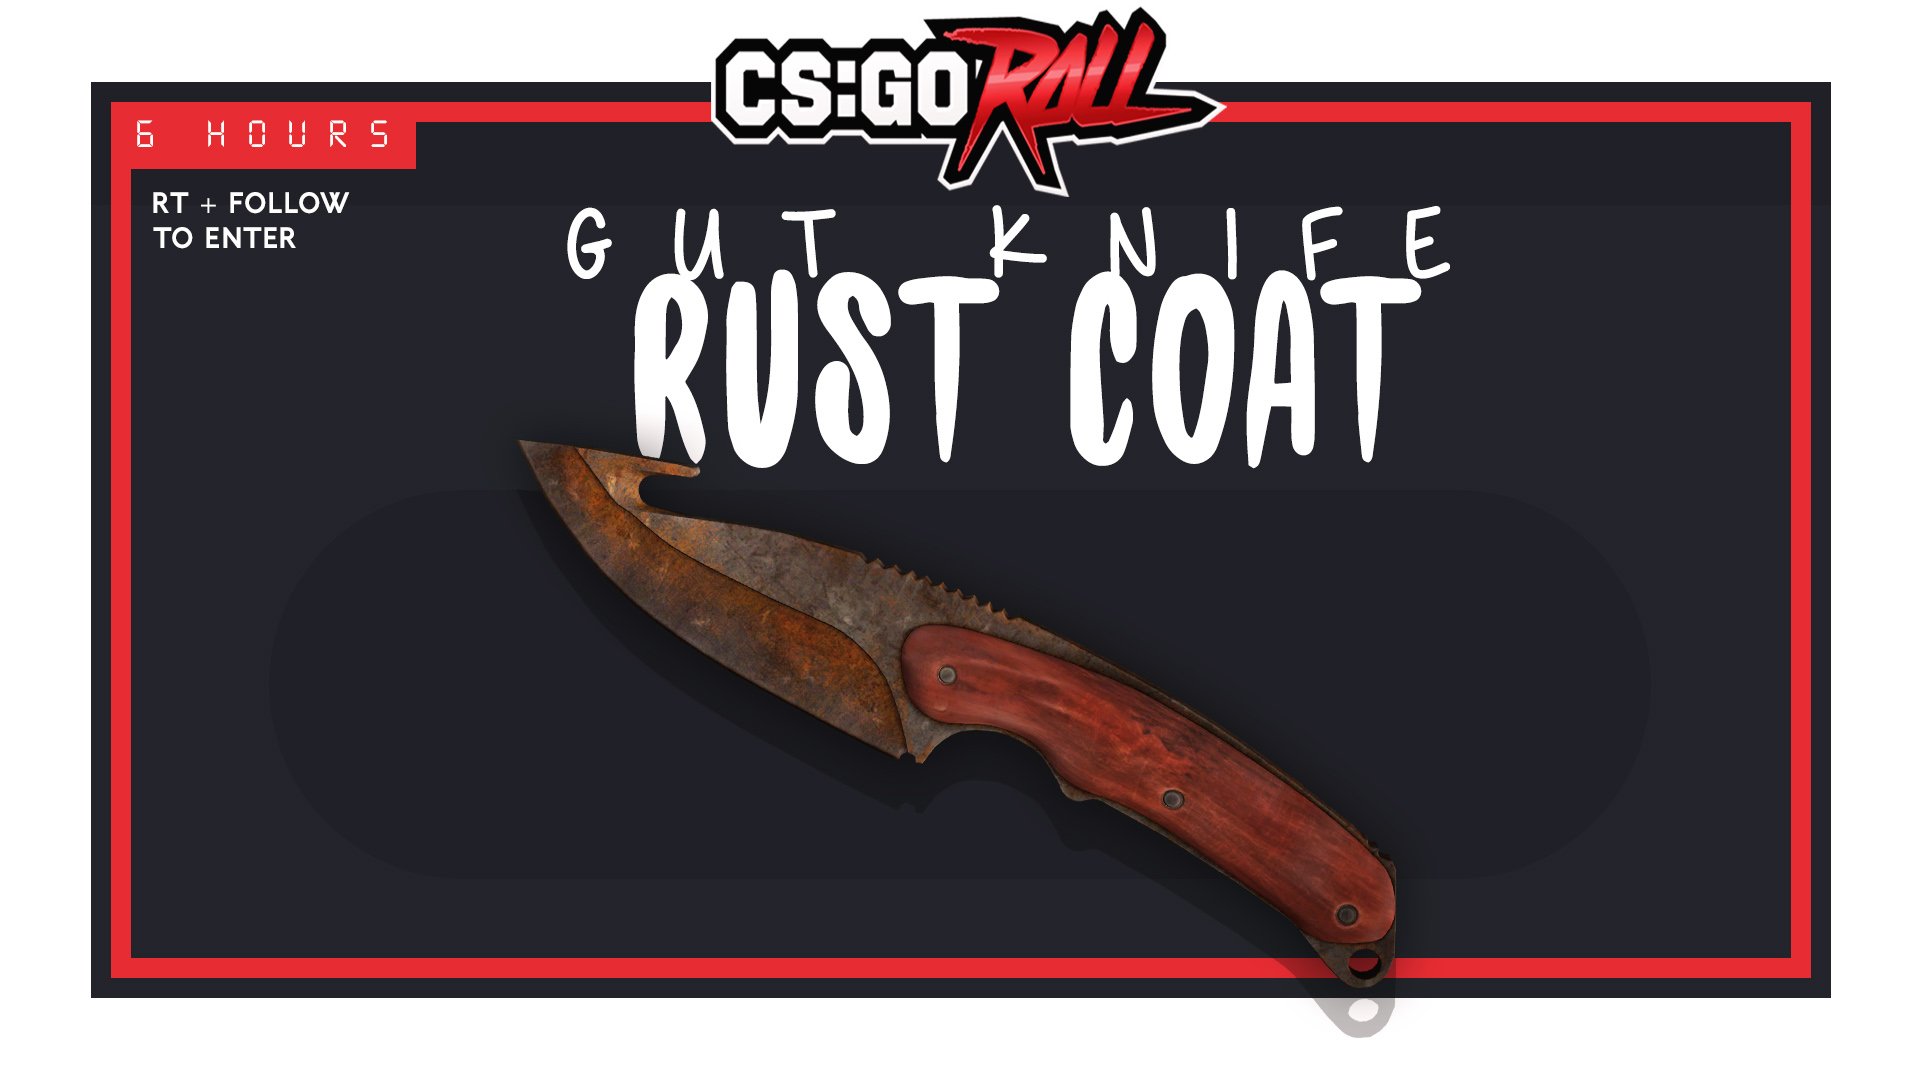 Gut knife rust coat цена фото 12